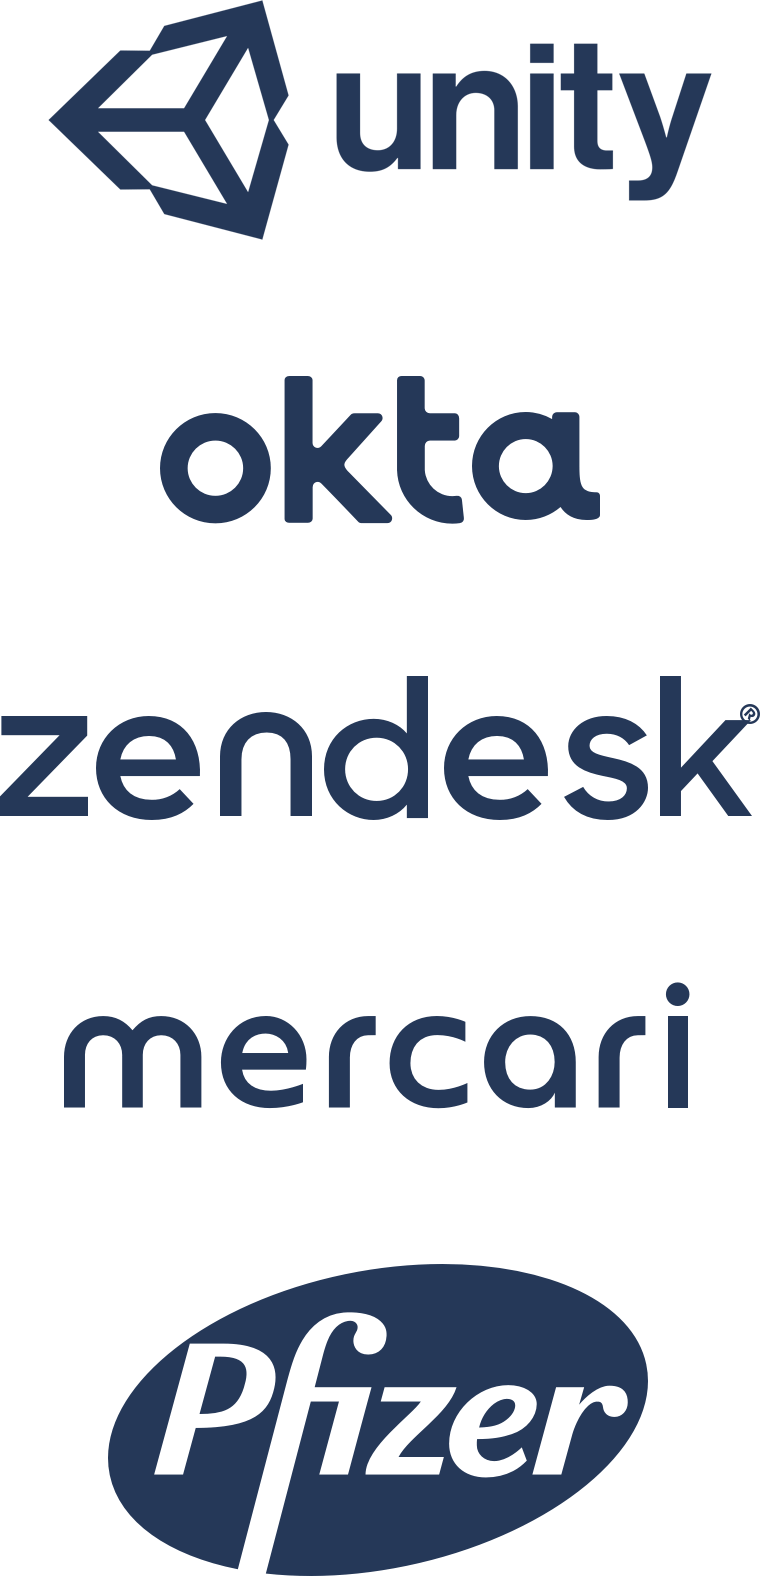 Logo Unity, Okta, Zendesk, Mercari, Pfizer